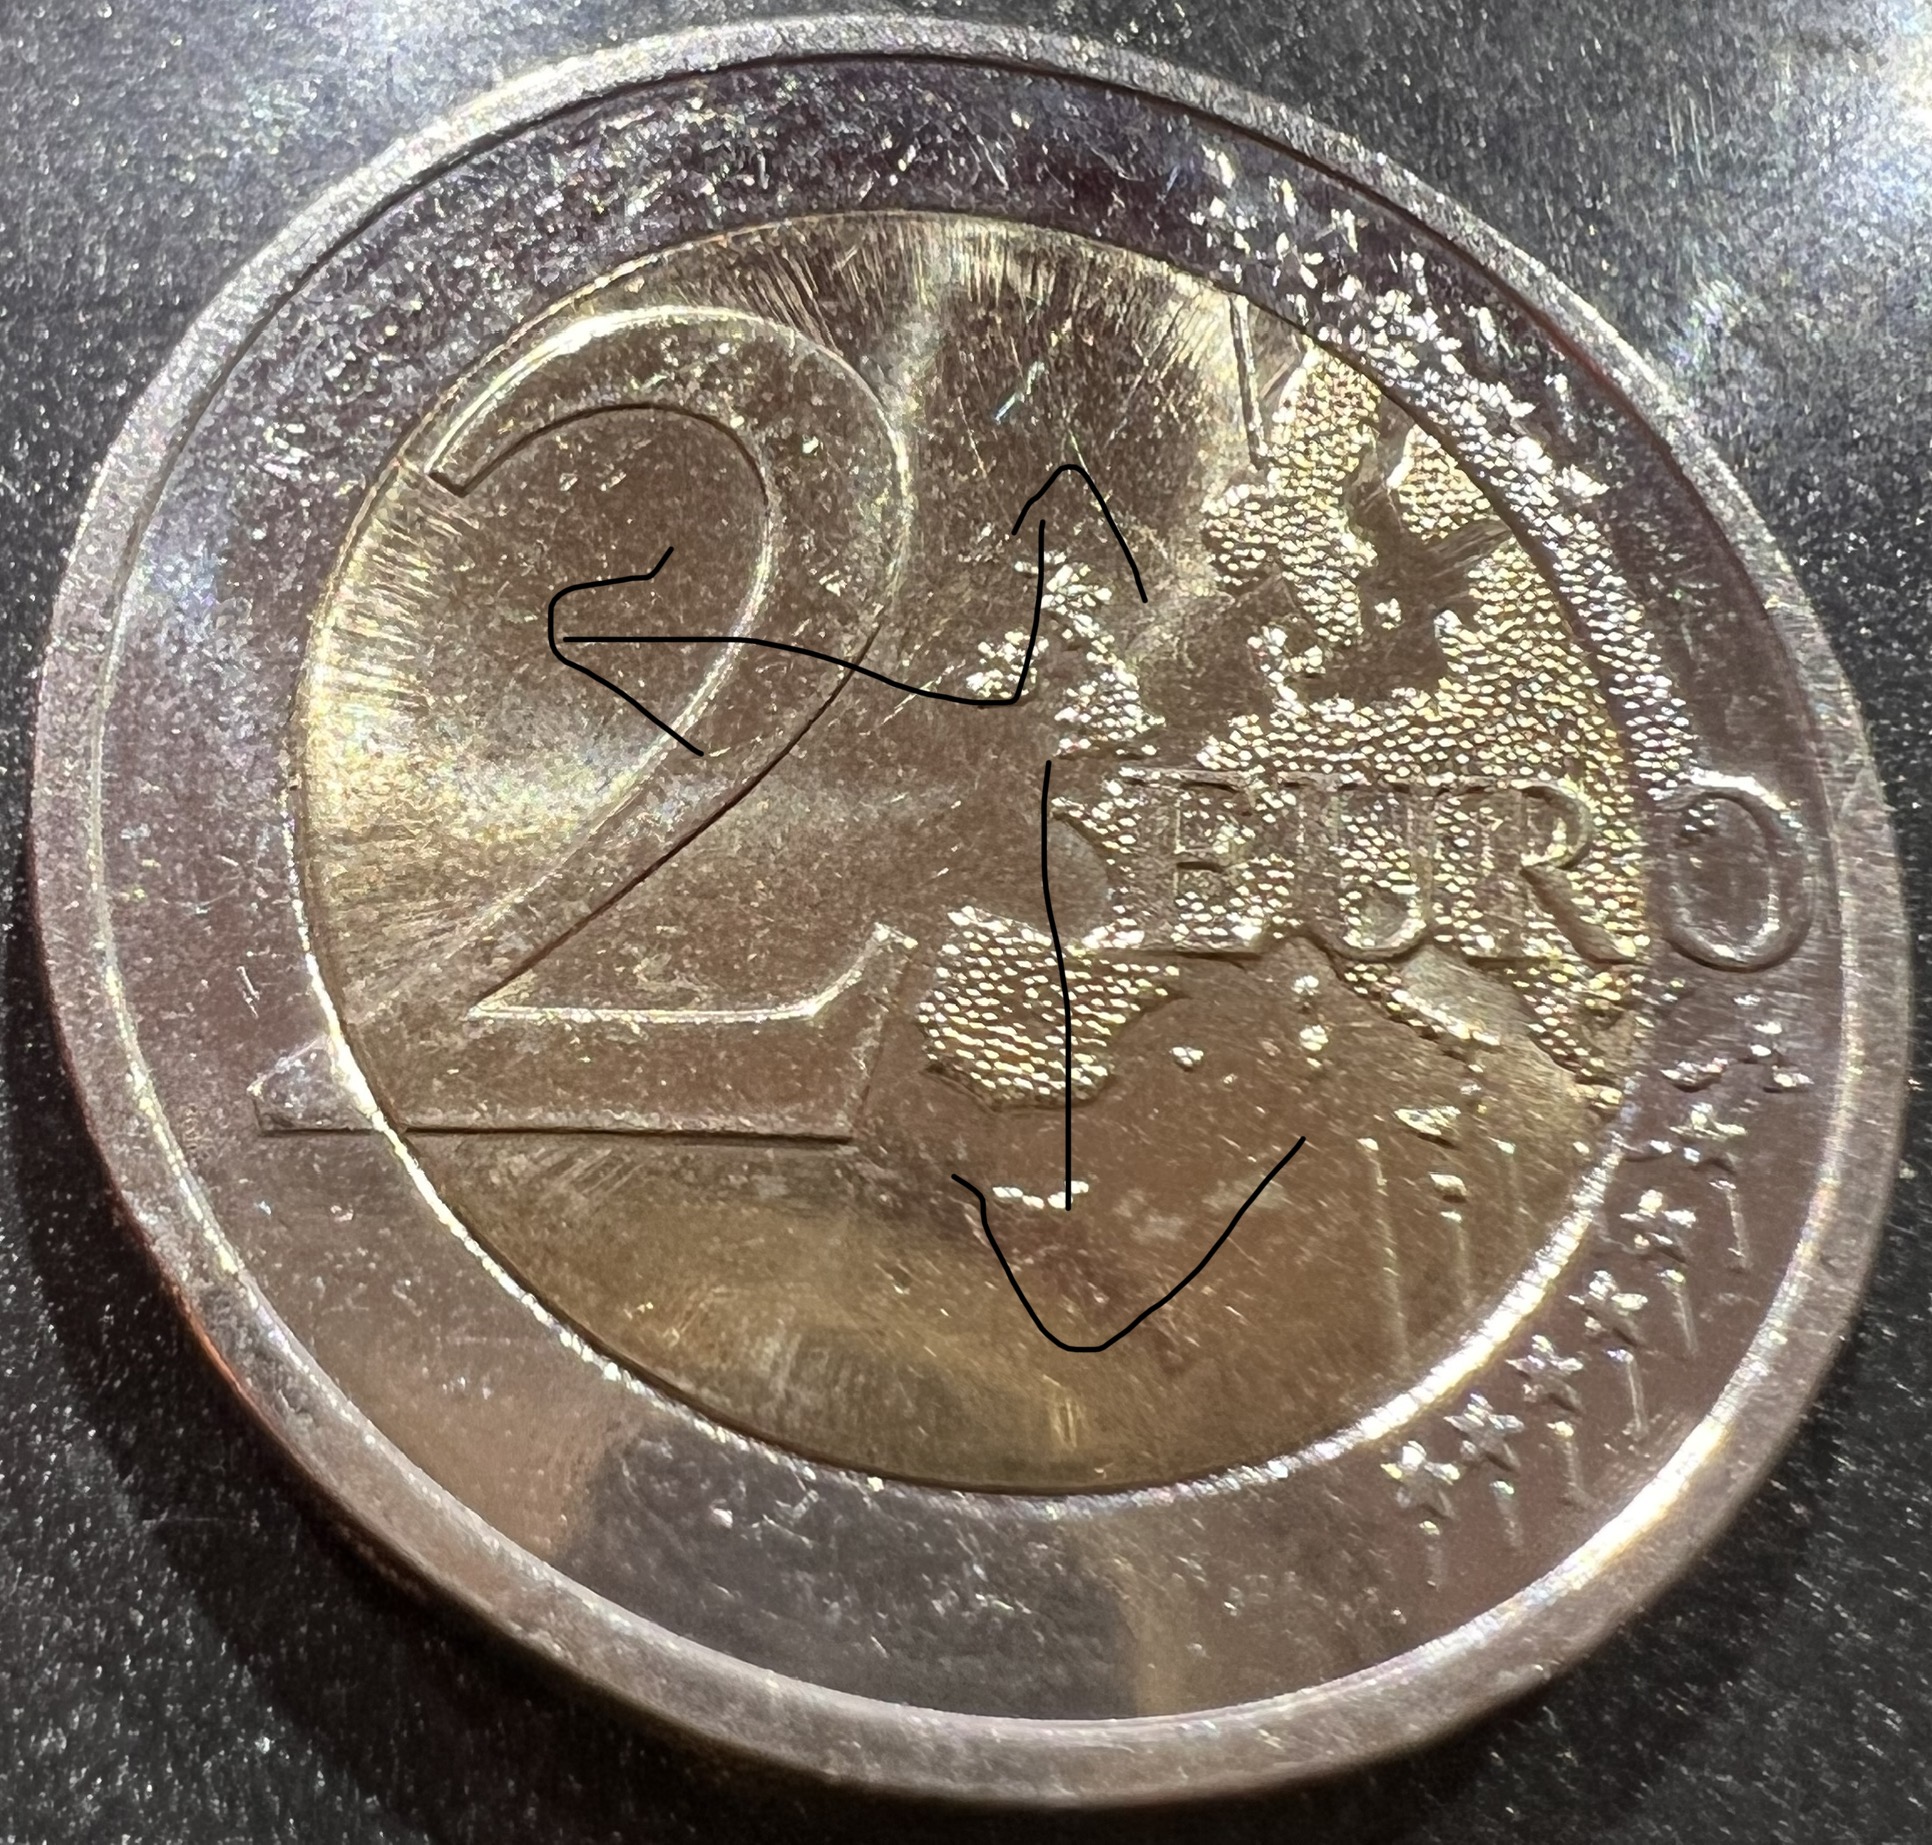 2€